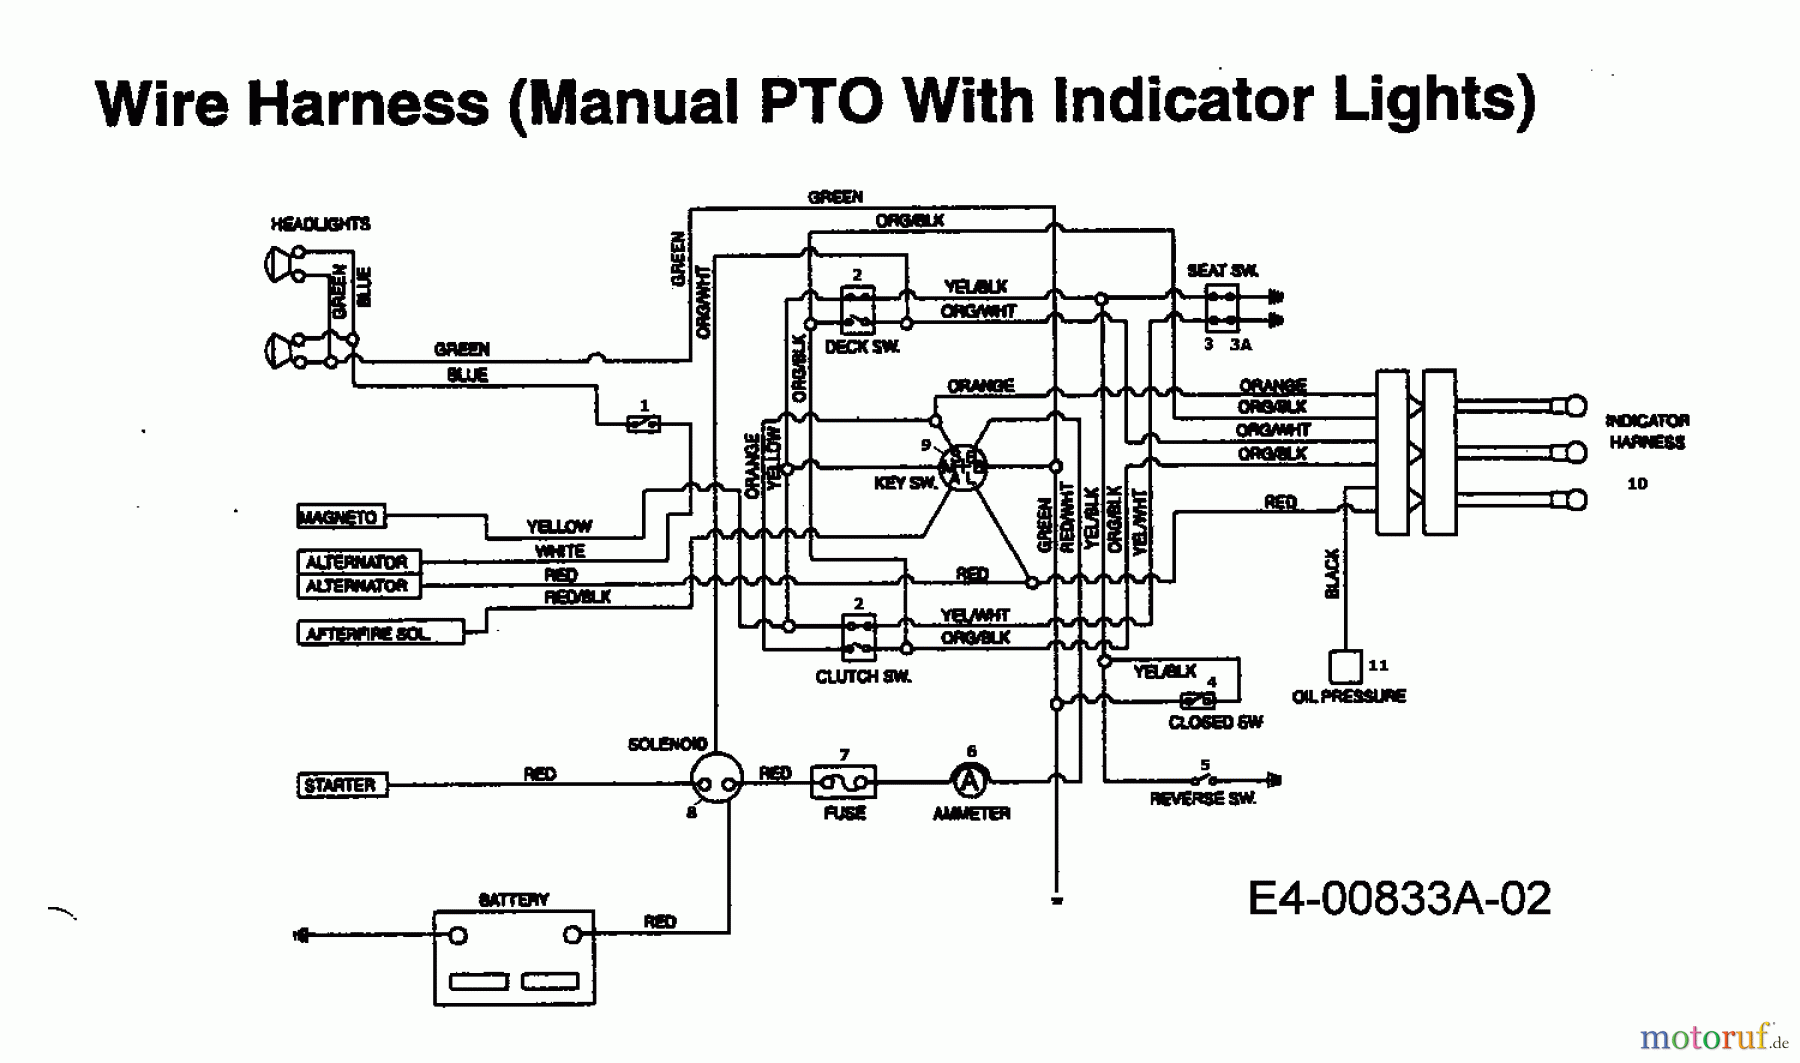  MTD Rasentraktoren IB 162 HST 13AF795N606  (1998) Schaltplan mit Kontrolleuchten